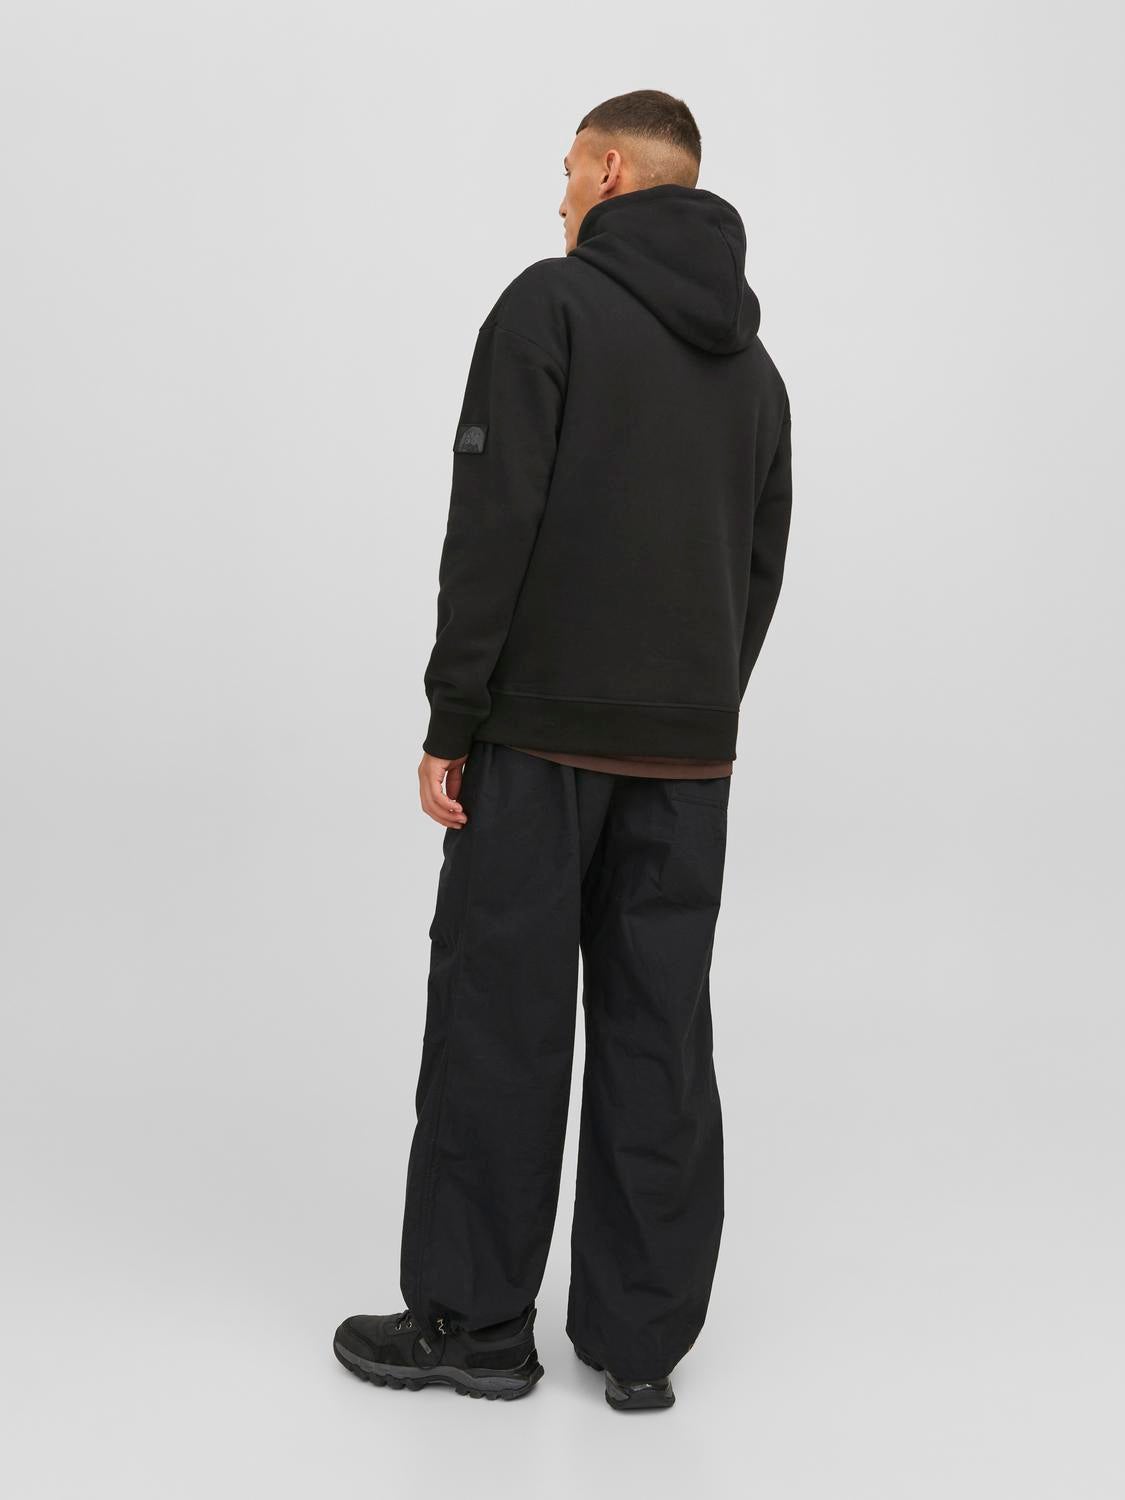 Premium Photo  Girl in black cargo pants and black hoodie